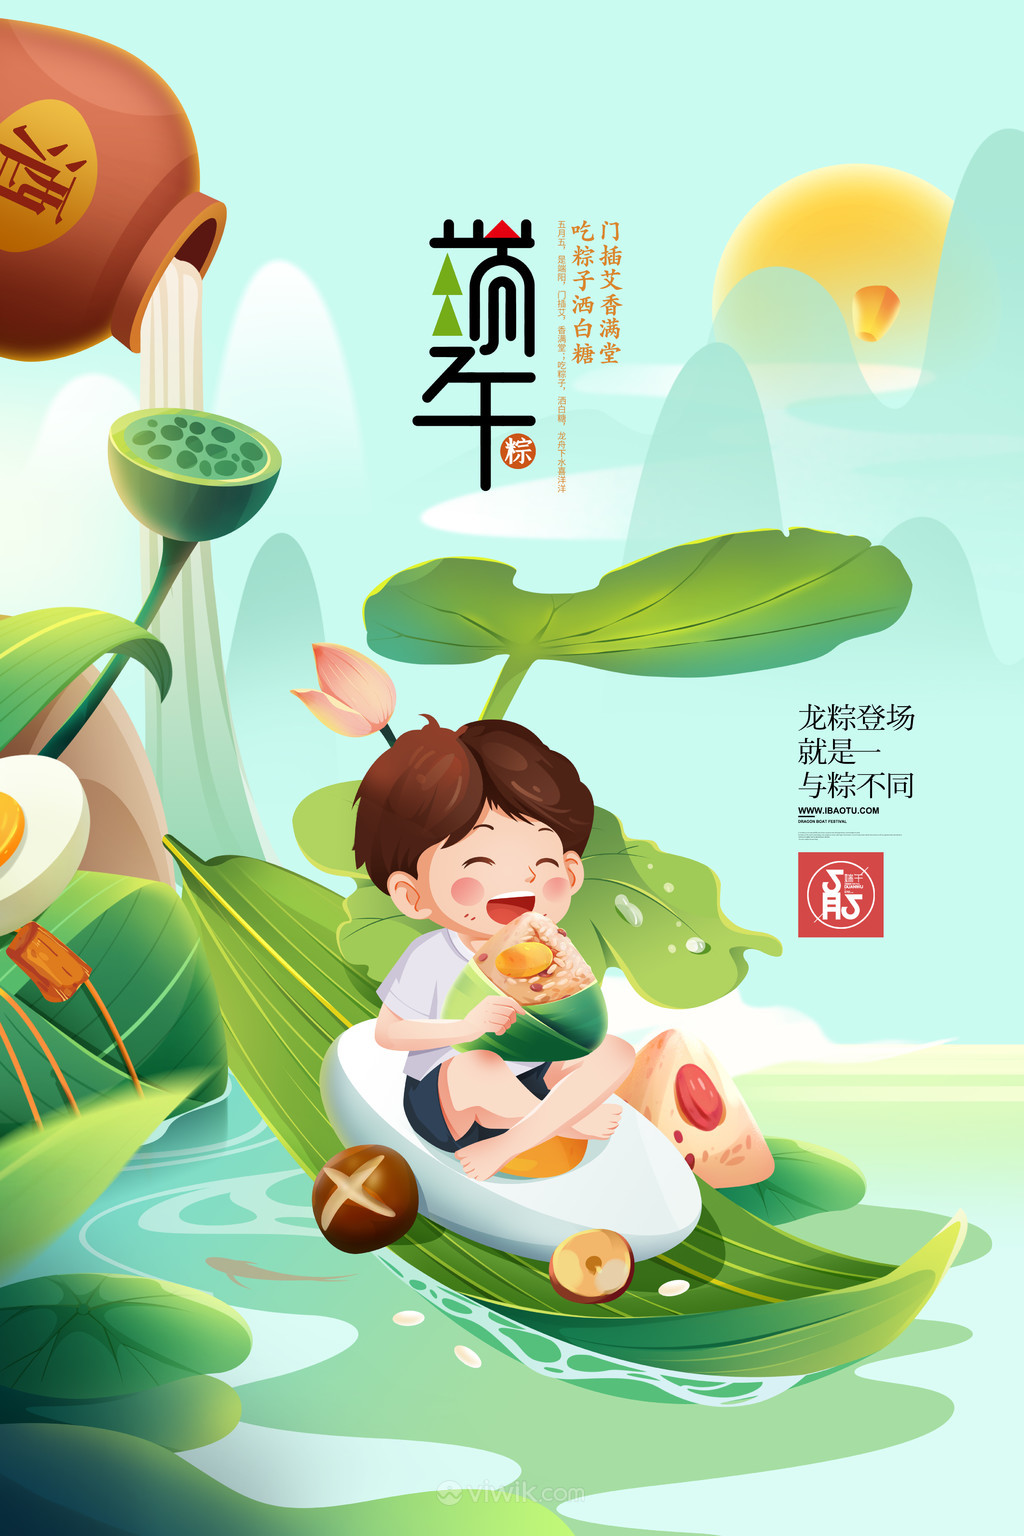 创意荷花粽子端午节促销海报插画素材